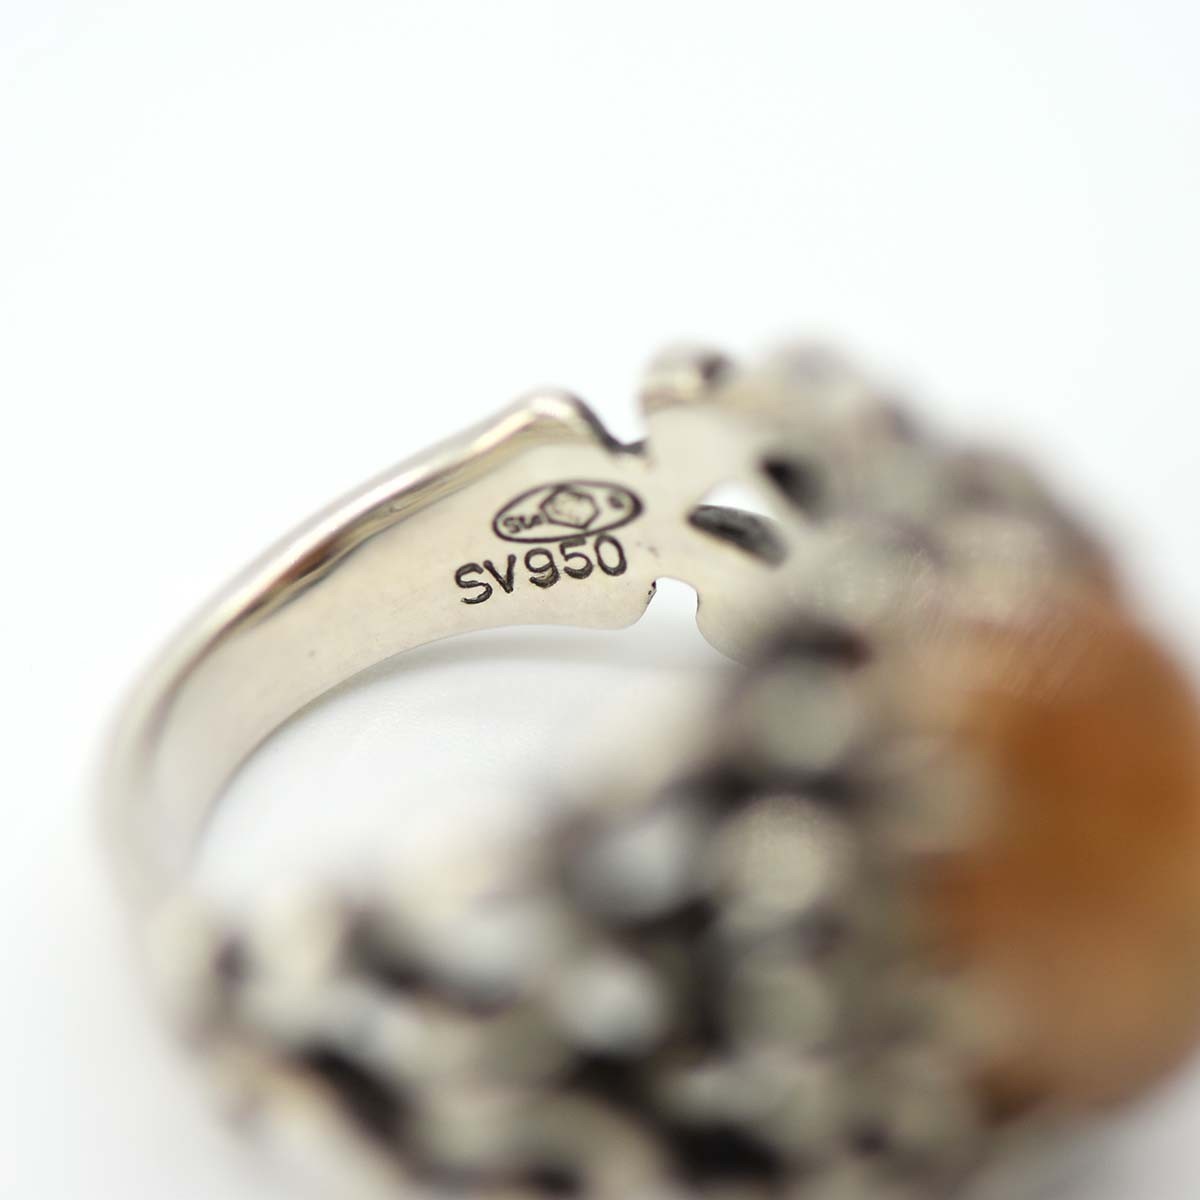  ломбард geodesiqueji.ote Schic кольцо SV950 9.5 номер orange цвет камень кольцо серебряный аксессуары que... ломбард 